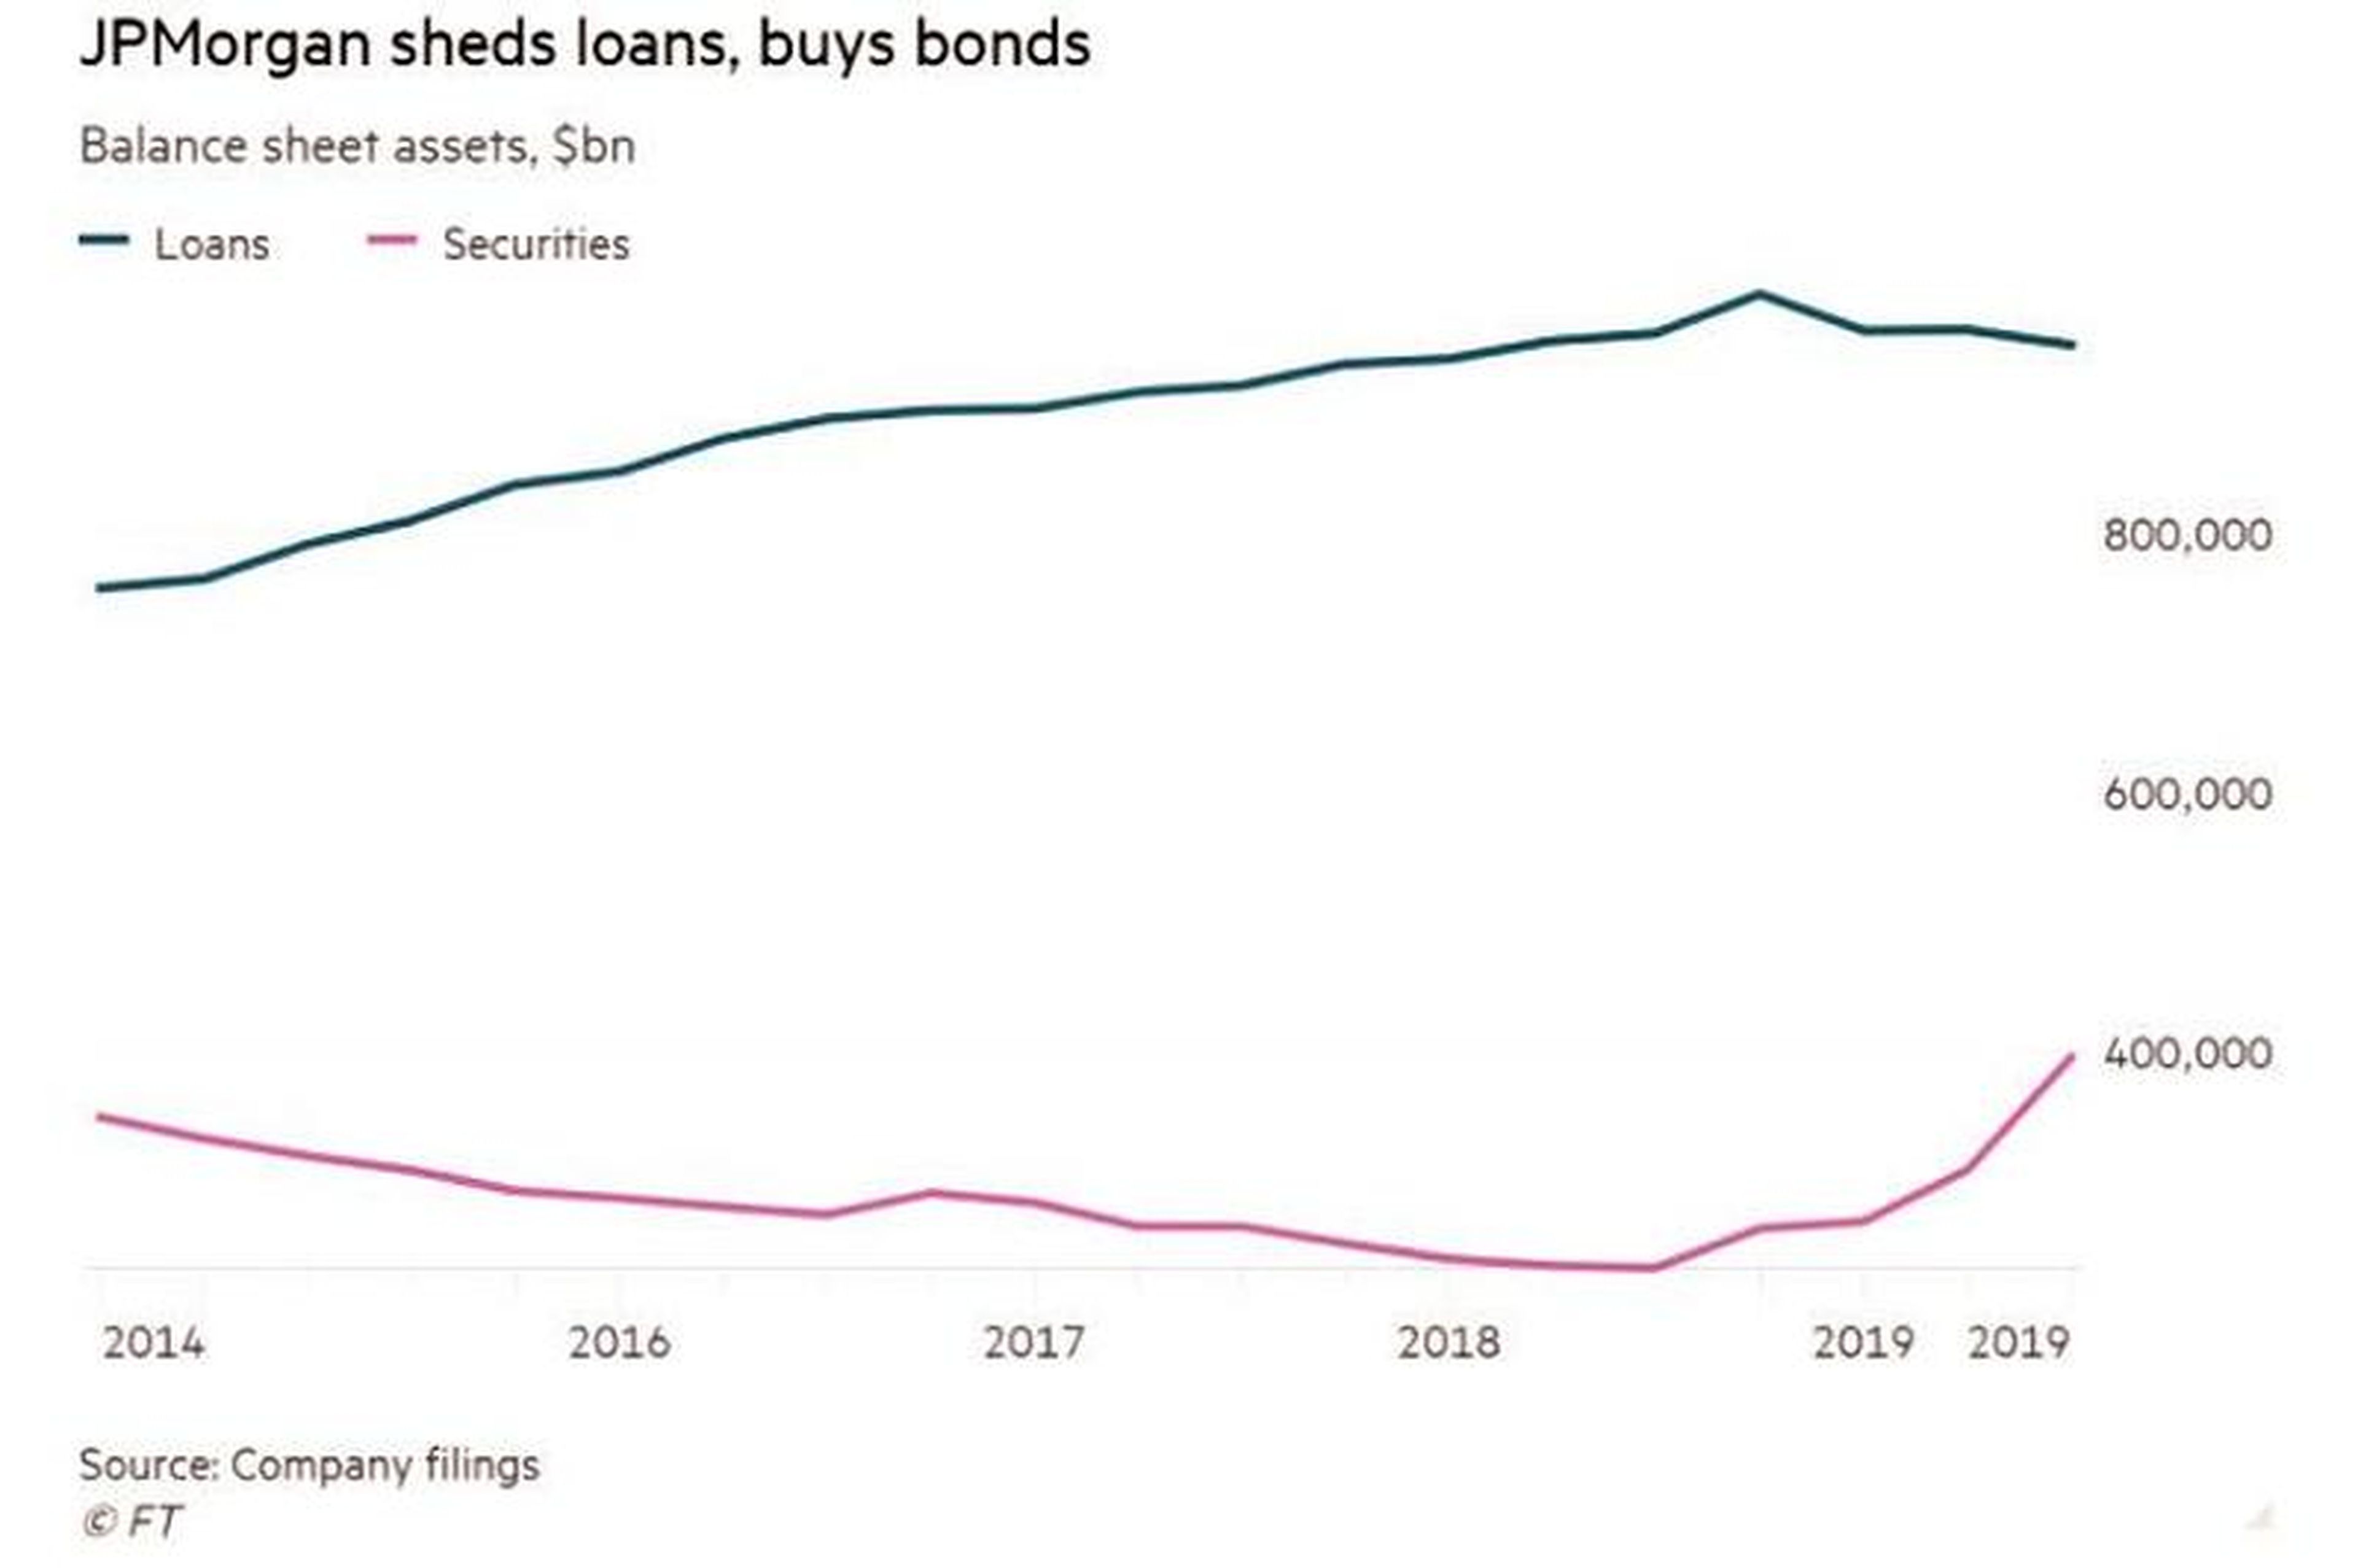 Ritmo de compra de bonos de JP Morgan desde 2014